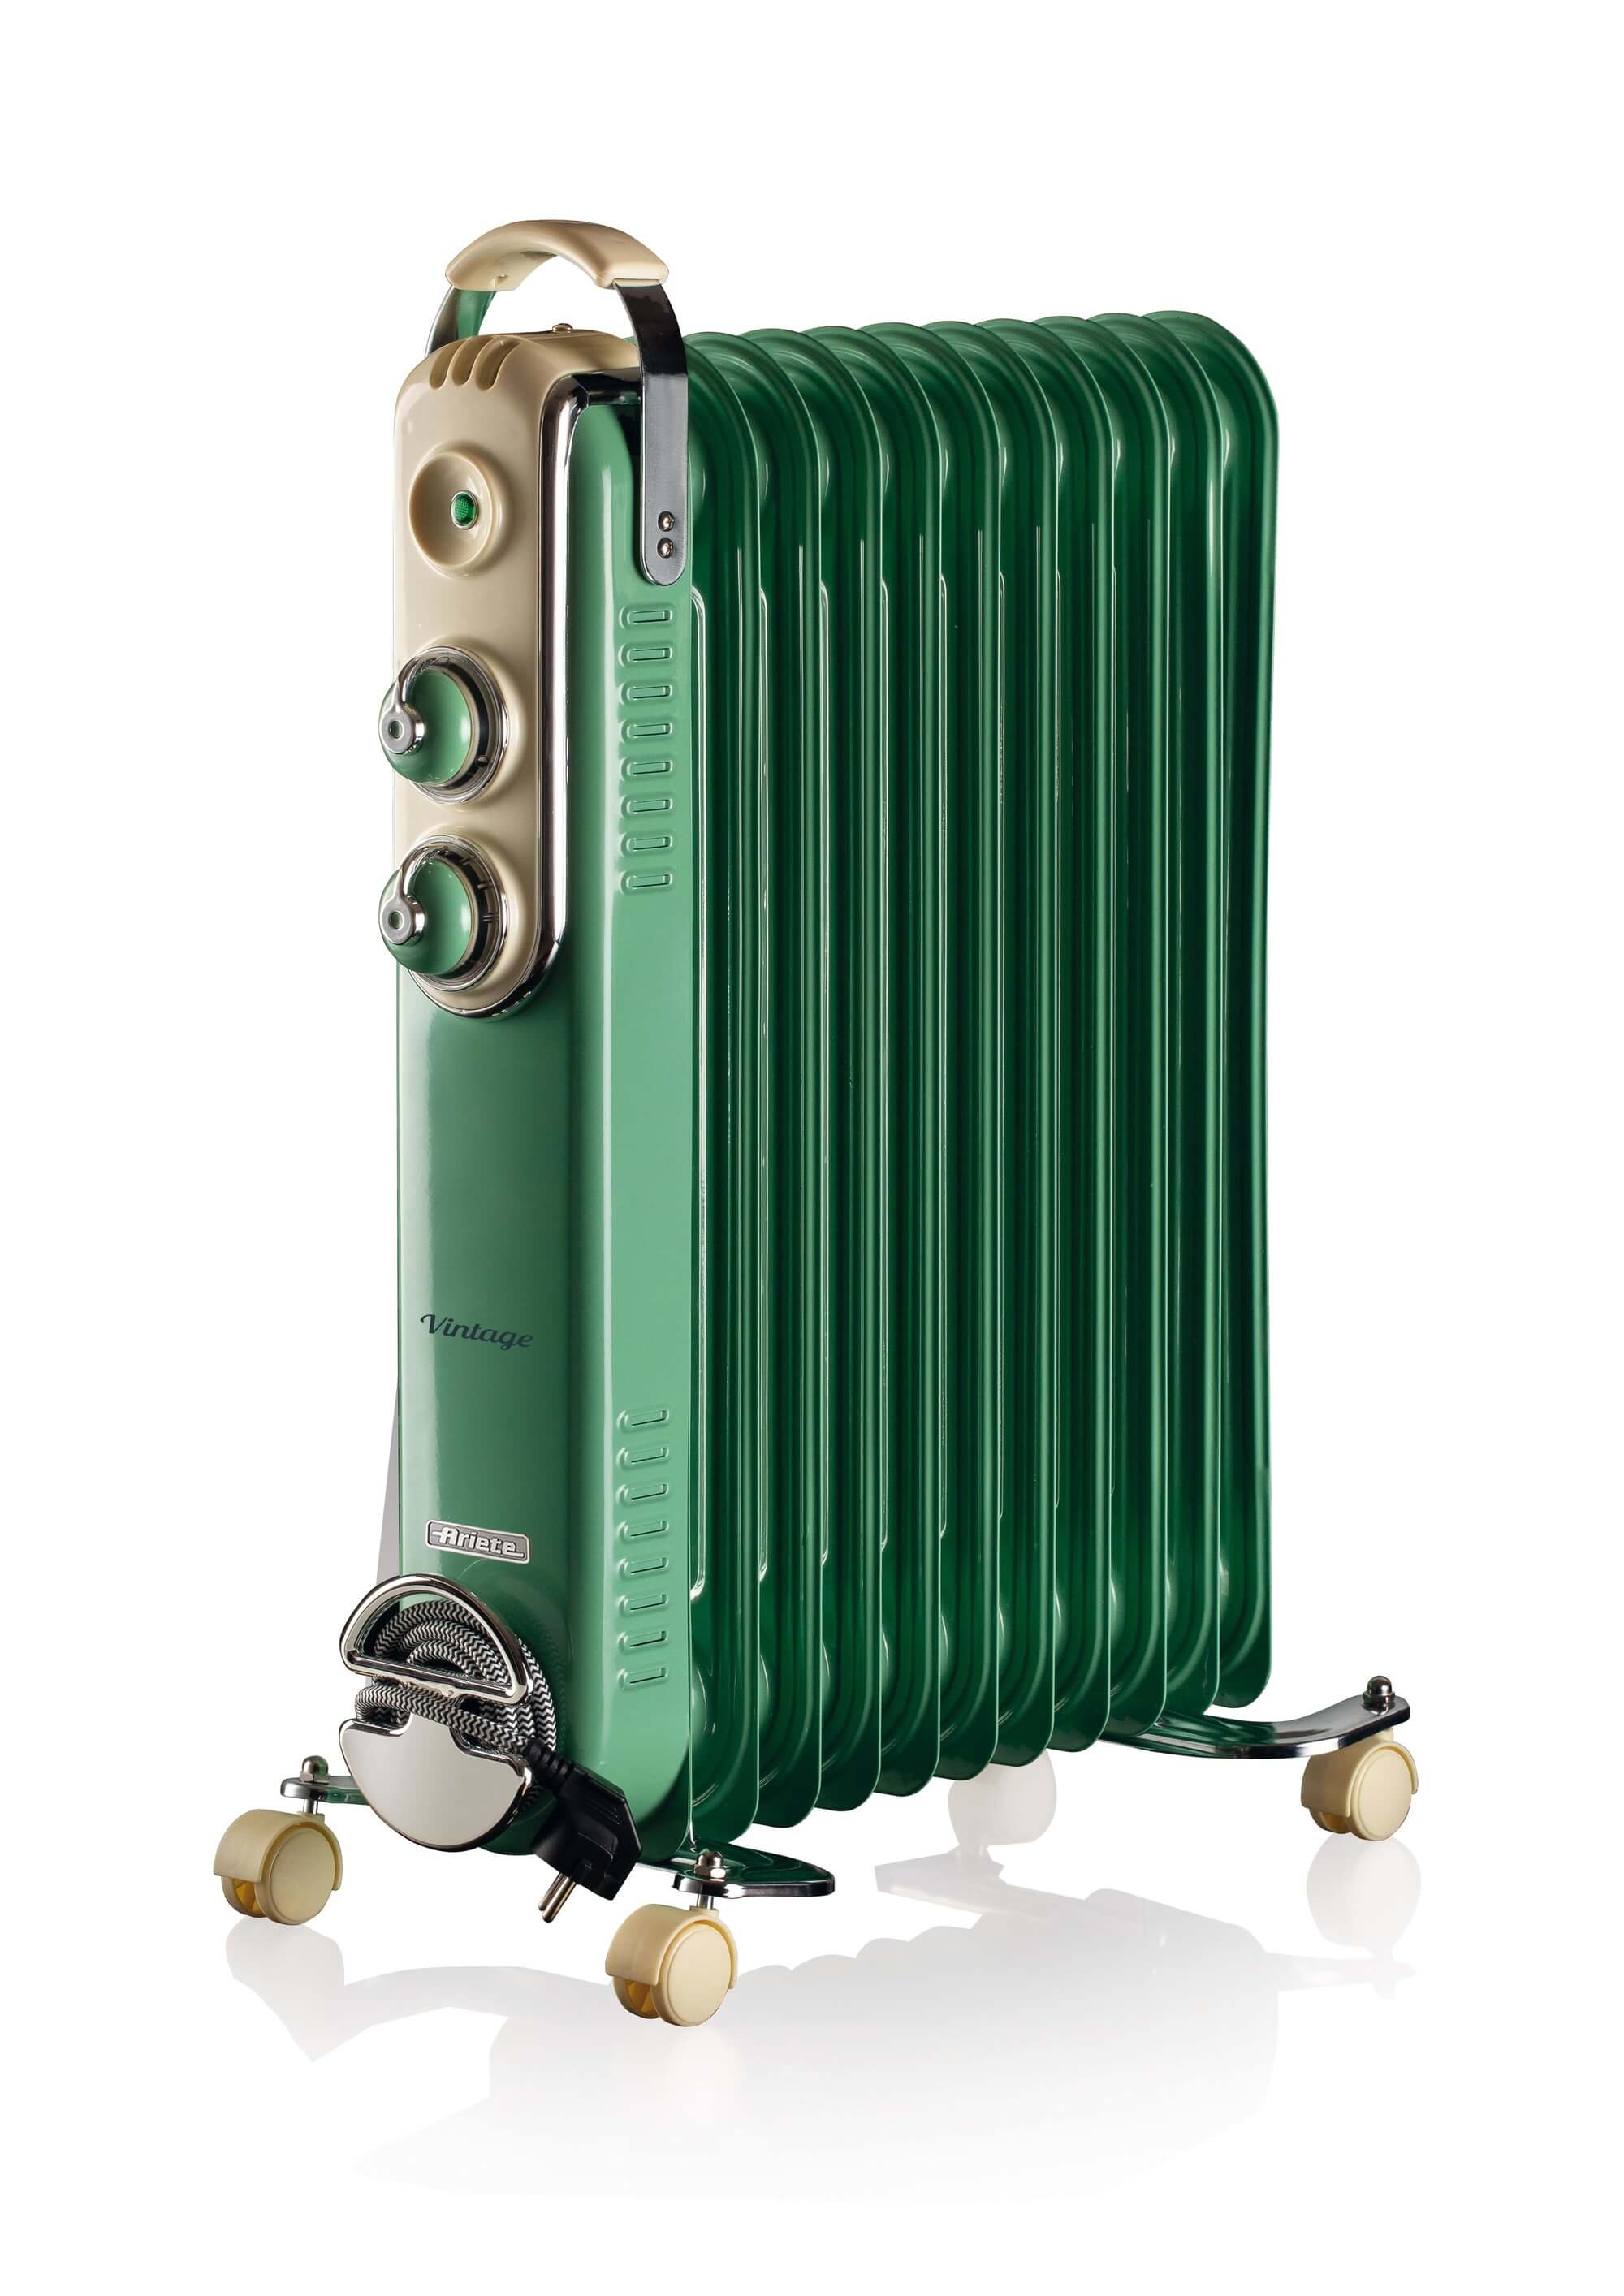 Immagine di  Ariete 839 Radiatore a olio Vintage Verde- 11 elementi riscaldanti - 3 livelli di potenza - Maniglia e ruote per facile trasporto - max 2500 Watt